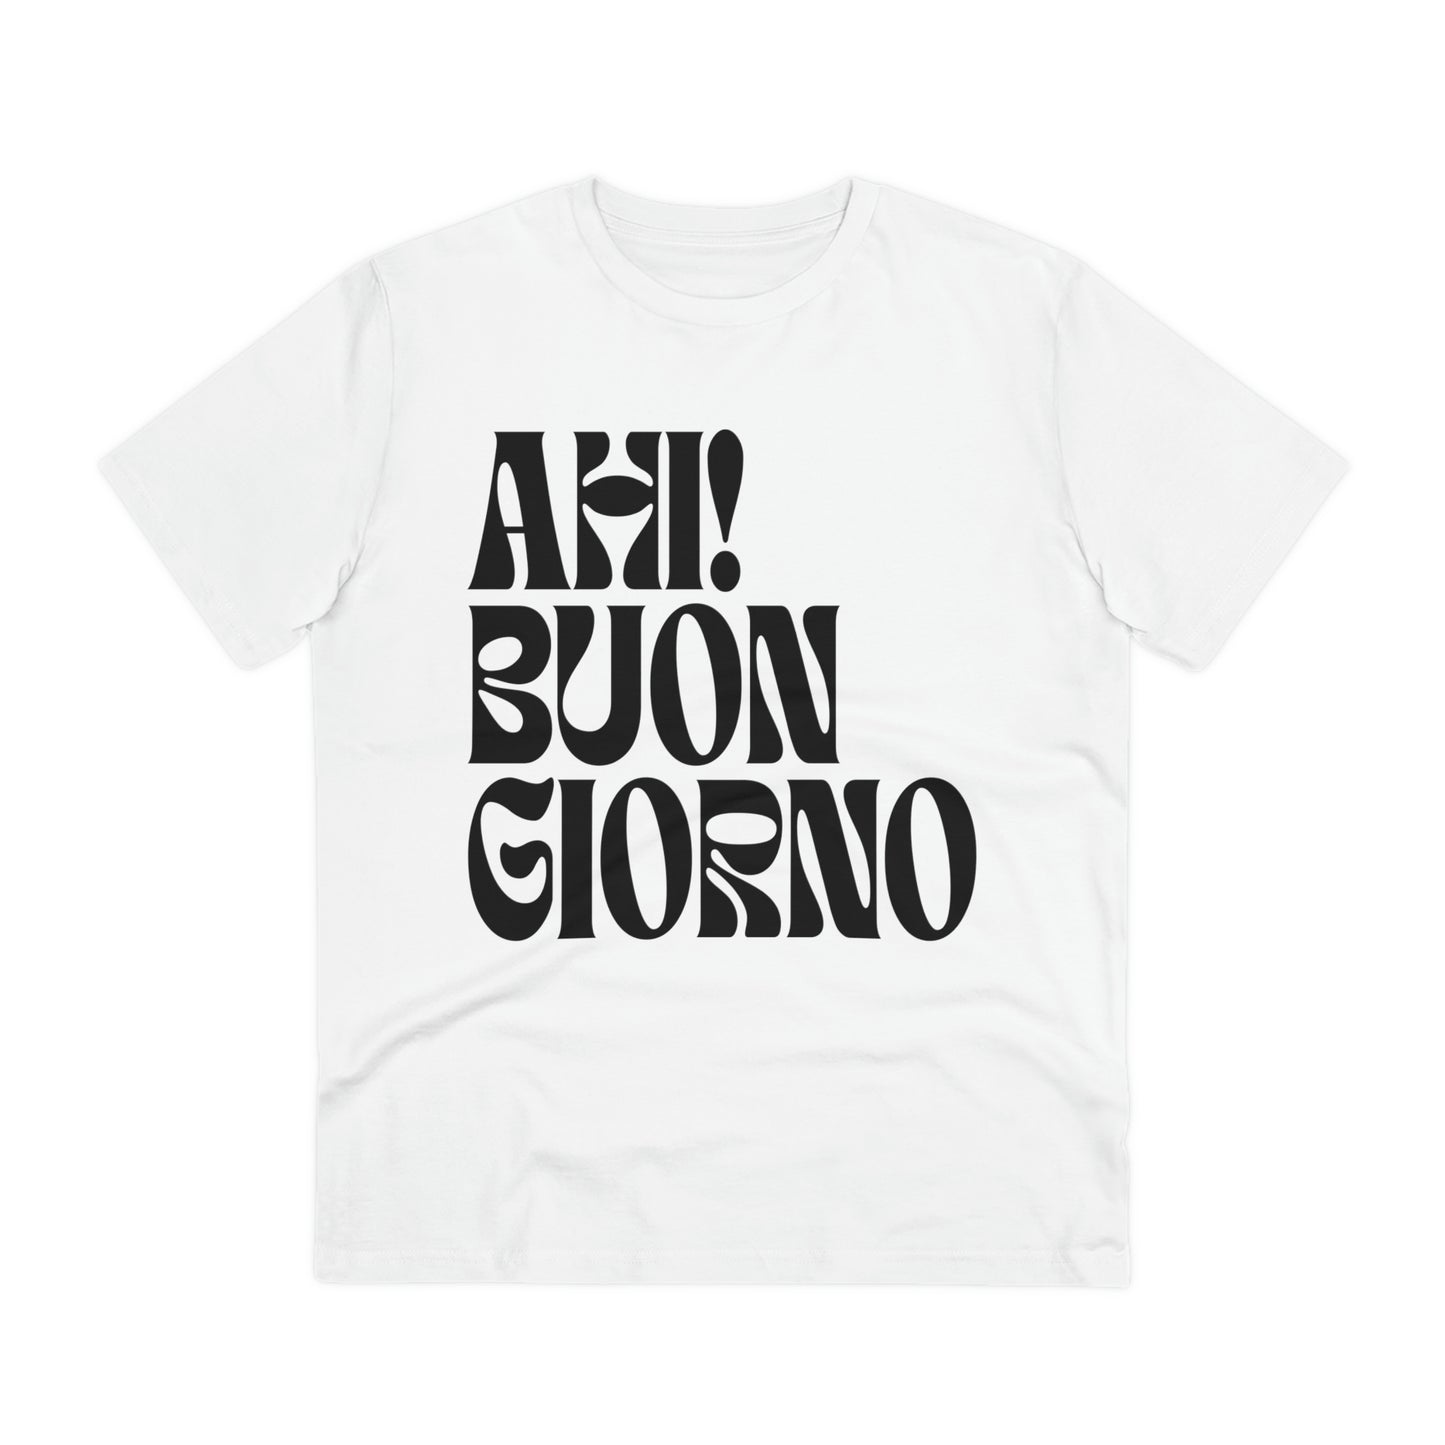 Foggy Project's new single Ahi! Buongiorno White T-shirt - Unisex